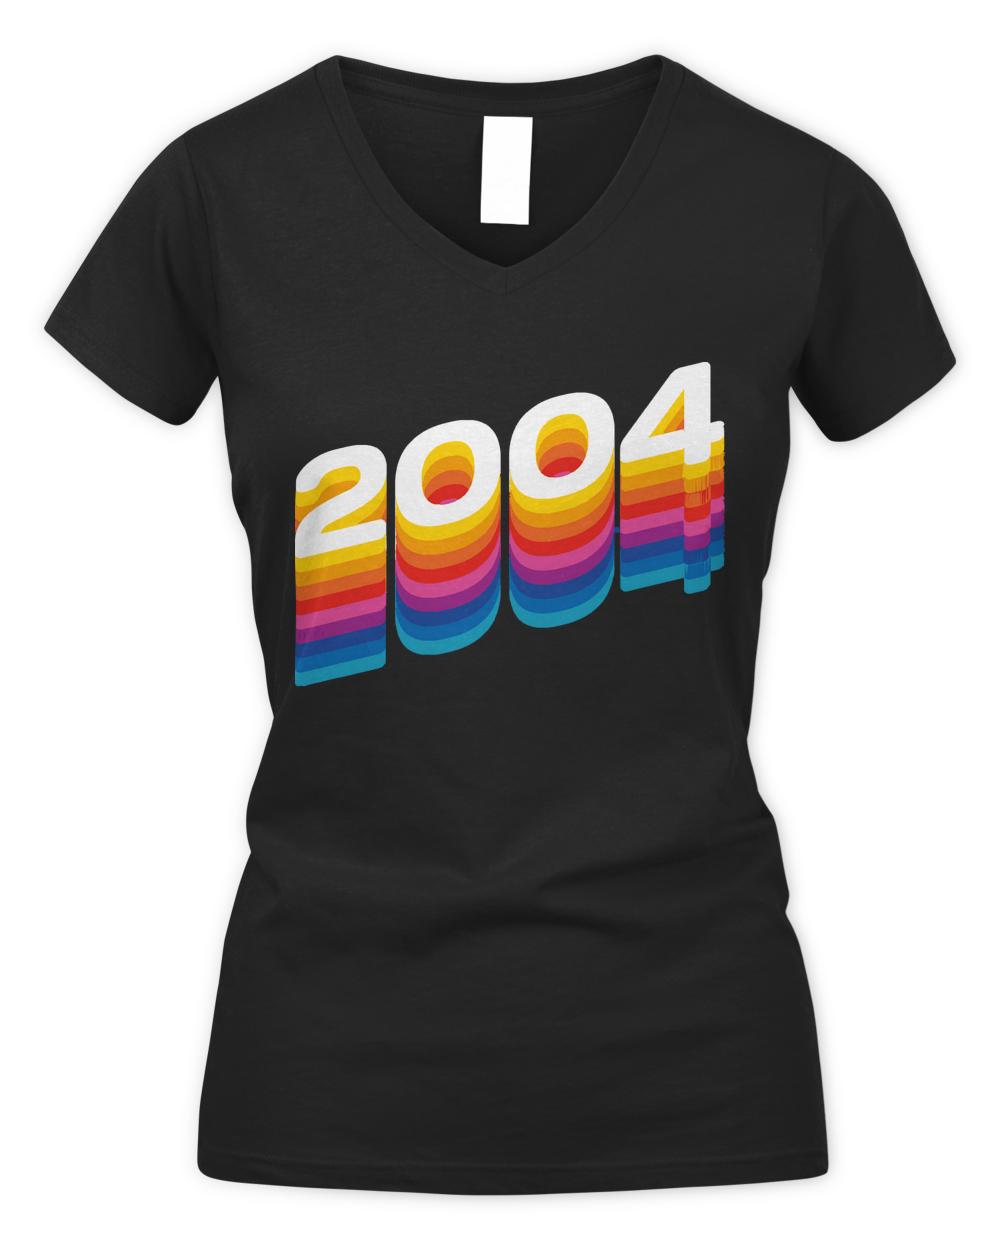 2004 T- Shirt2004 T- Shirt